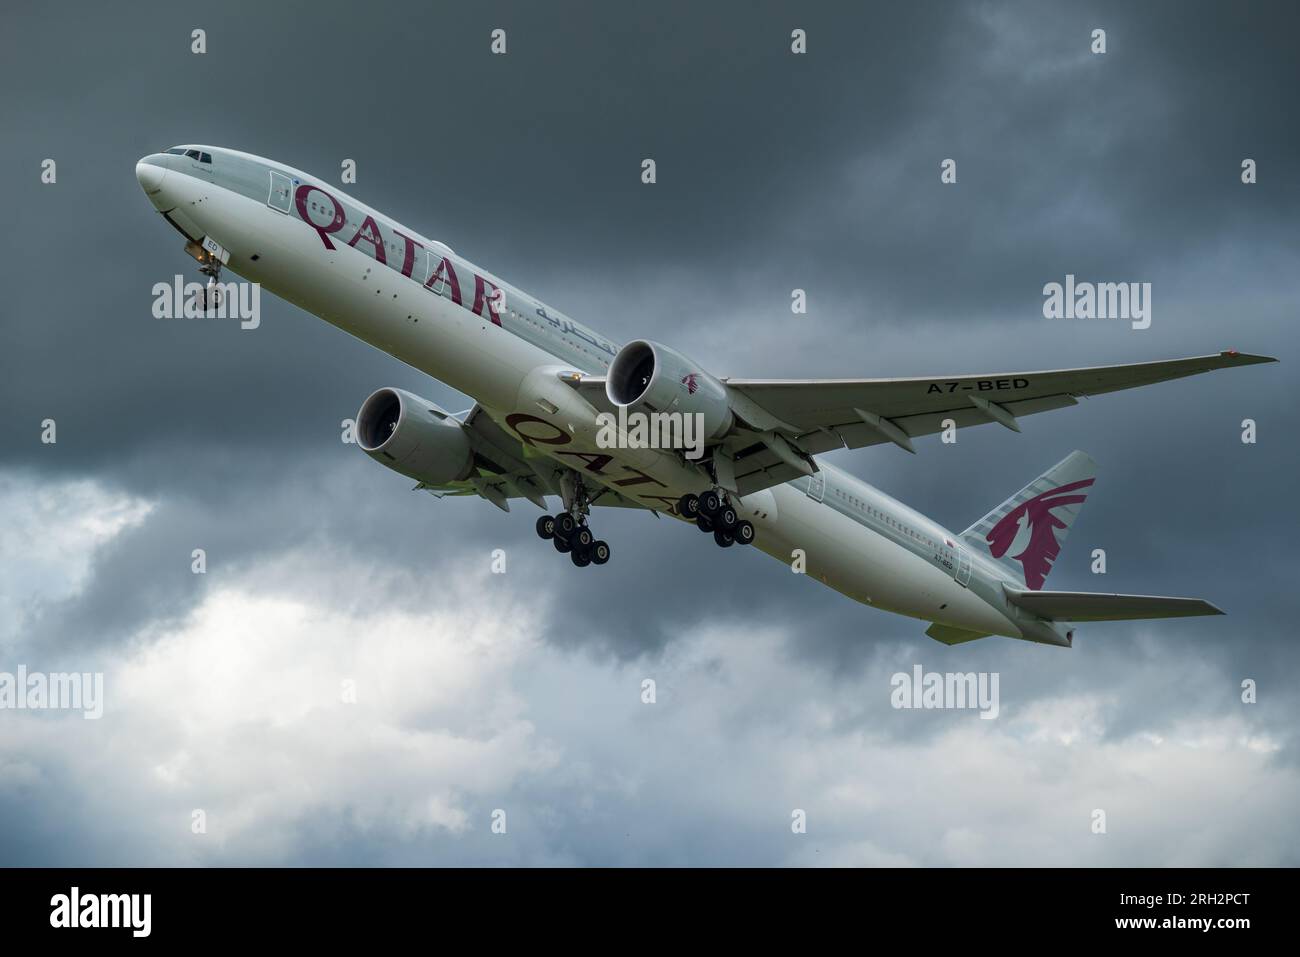 Qatar airways Boeing 777-3DZ/ER. Stock Photo